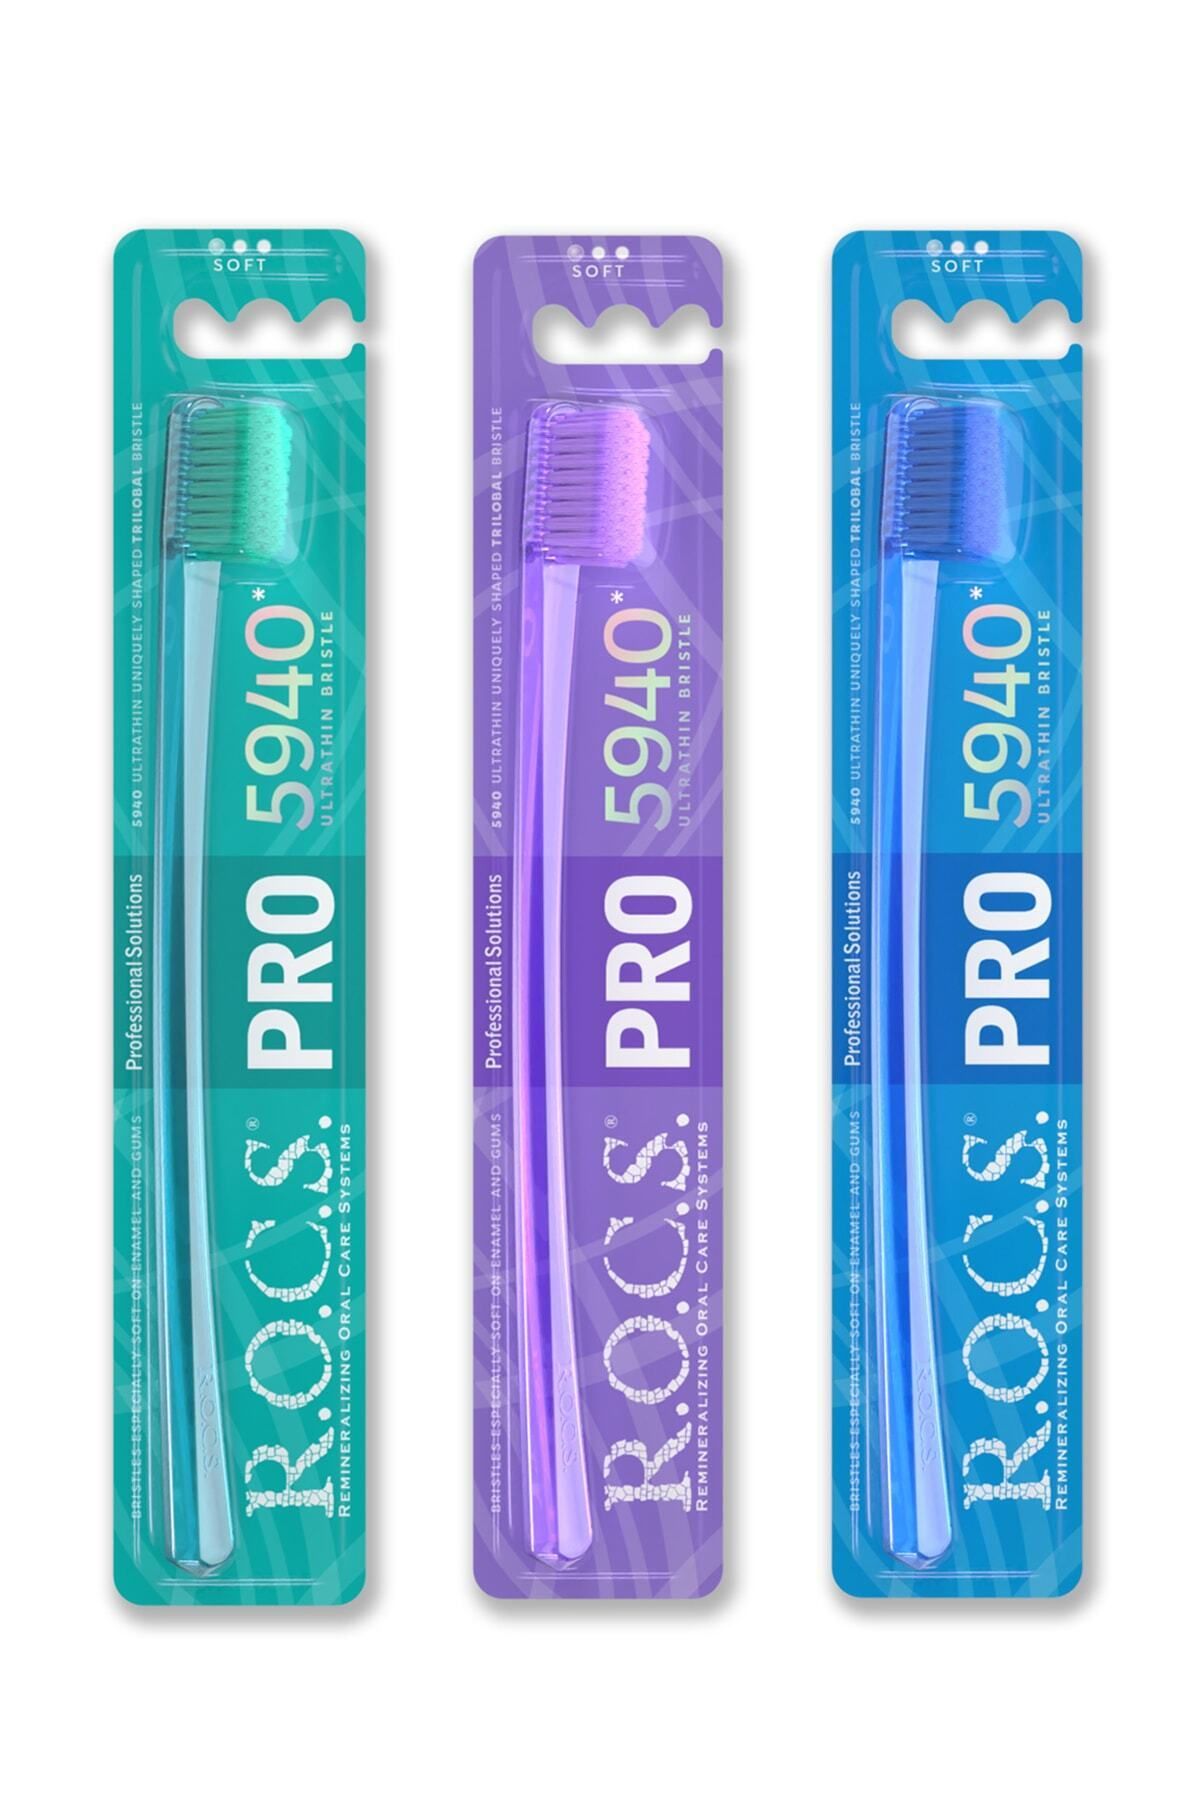 R.O.C.S. Pro 5940 Adet Fırça Kılı Içeren Diş Fırçası - 3 Adet